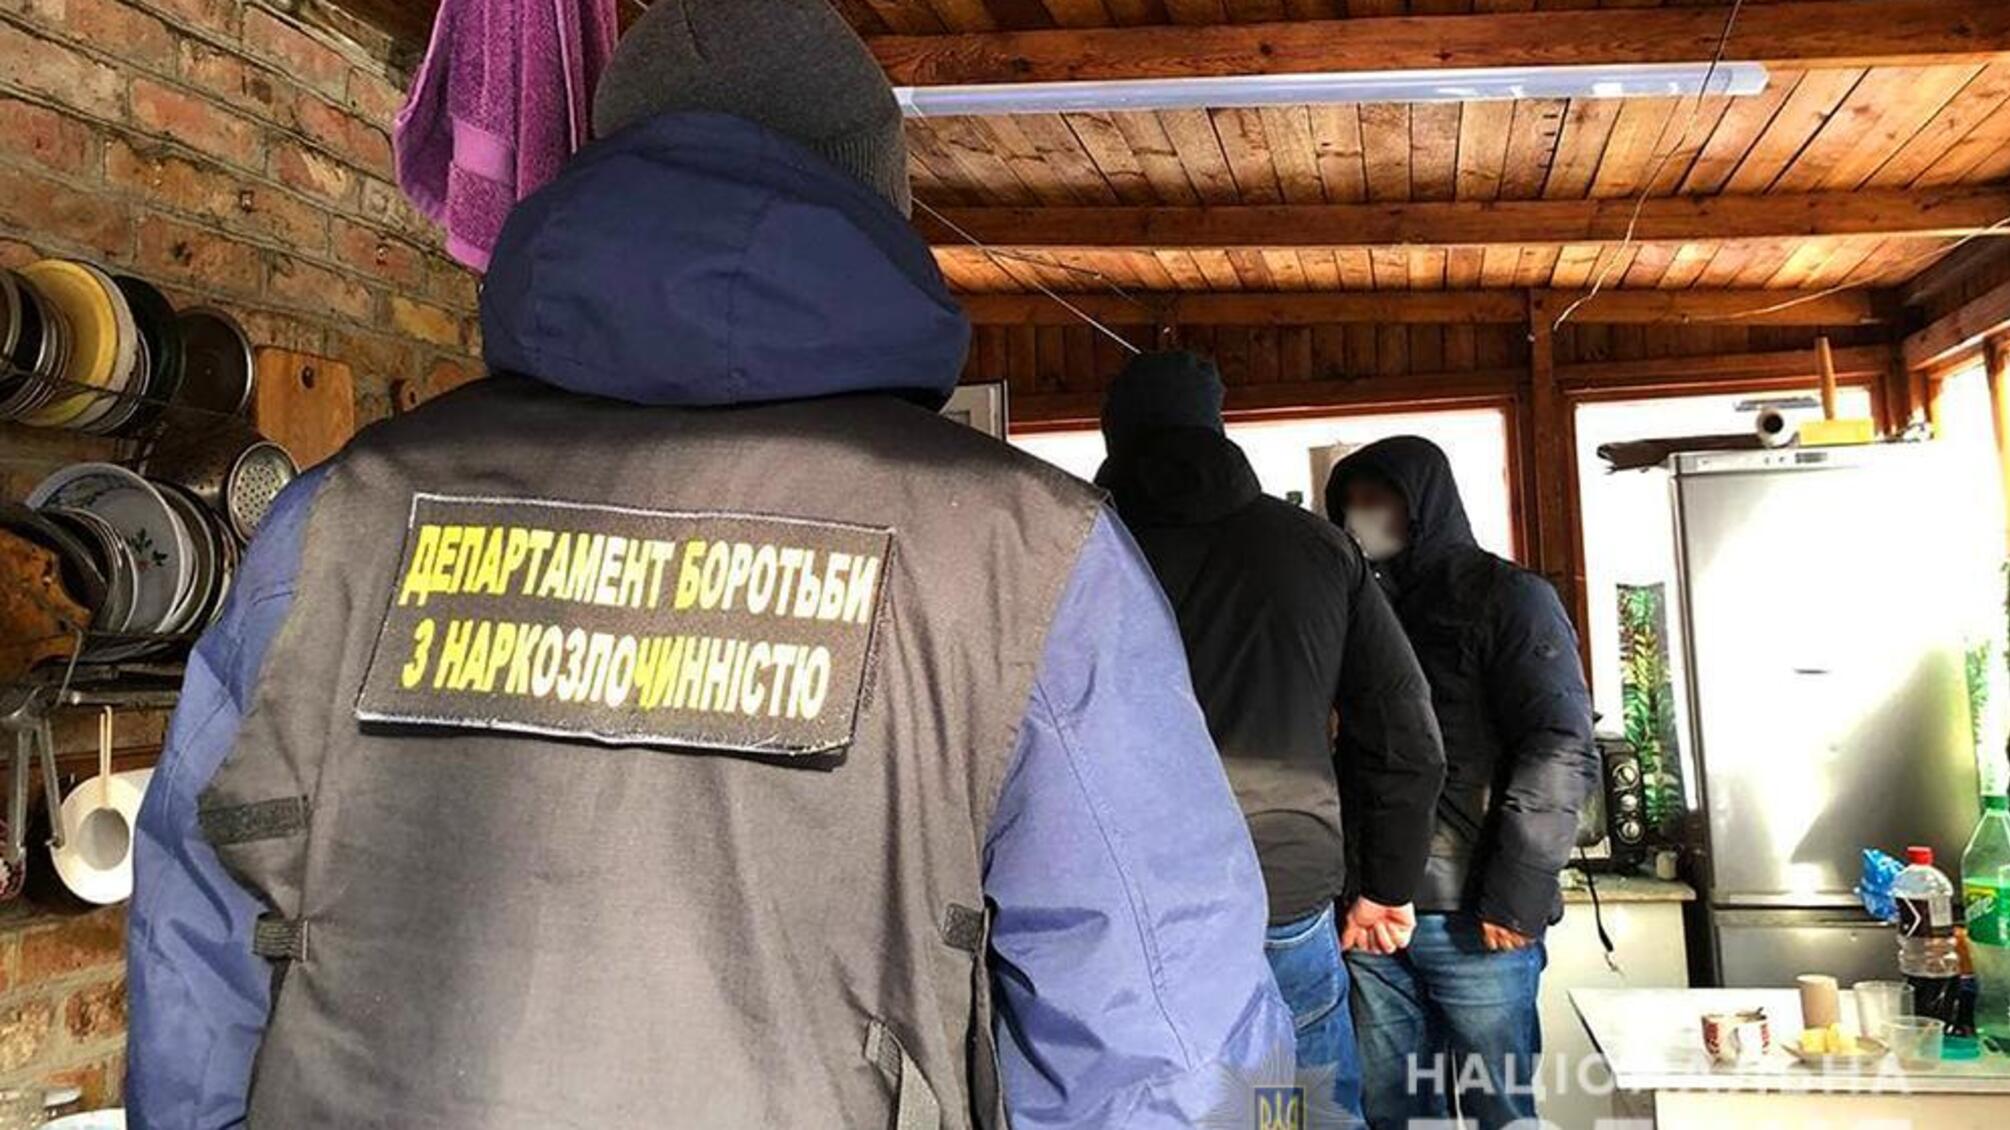 Оперативники Нацполиции задержали преступную группу за организацию масштабной наркот лаборатории